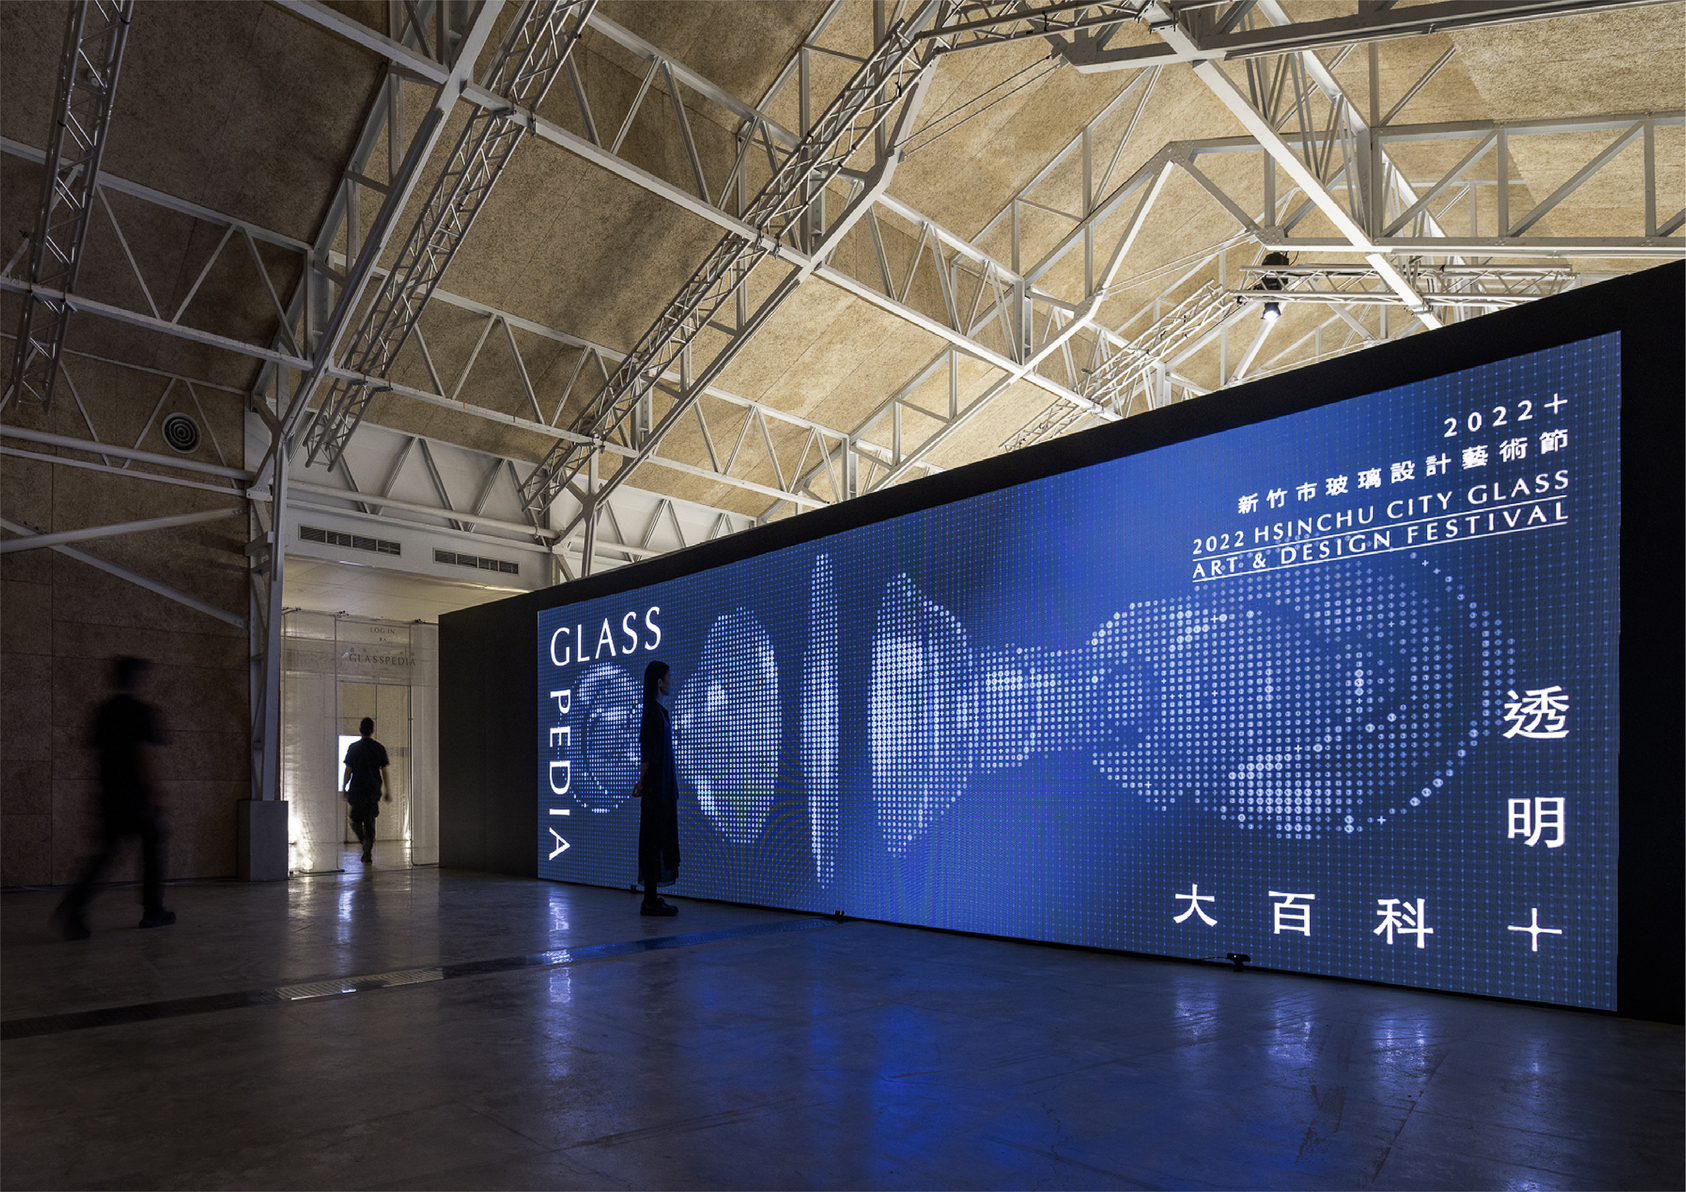 2022年新竹市玻璃設計藝術節——透明大百科-5